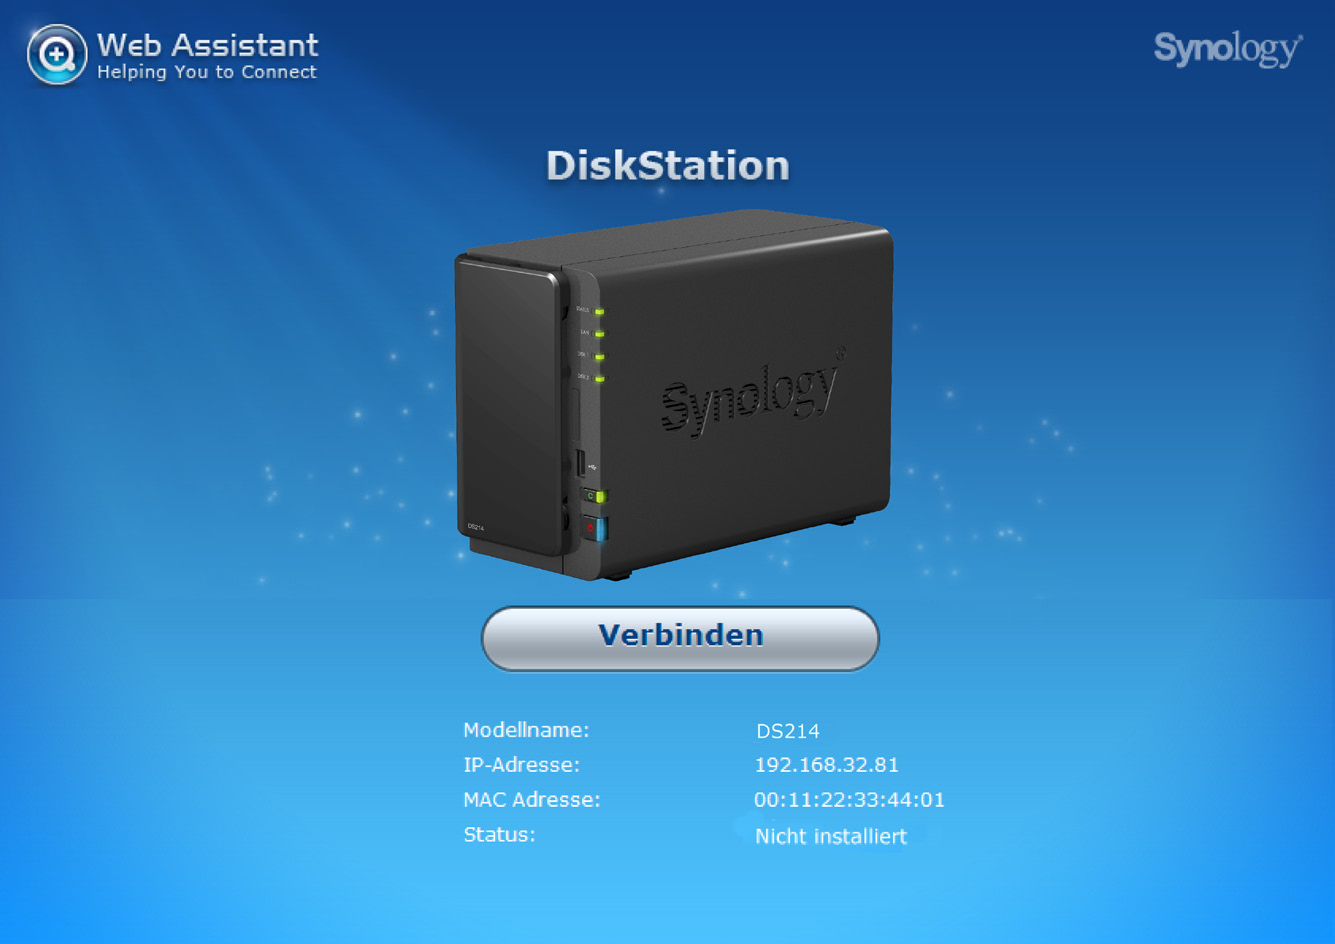 Kapitel Installation des DSM auf der DiskStation Kapitel 3: 3 Sobald die Hardware bereit ist, ist für die korrekte Funktion der DiskStation der DiskStation Manager (DSM) erforderlich - das